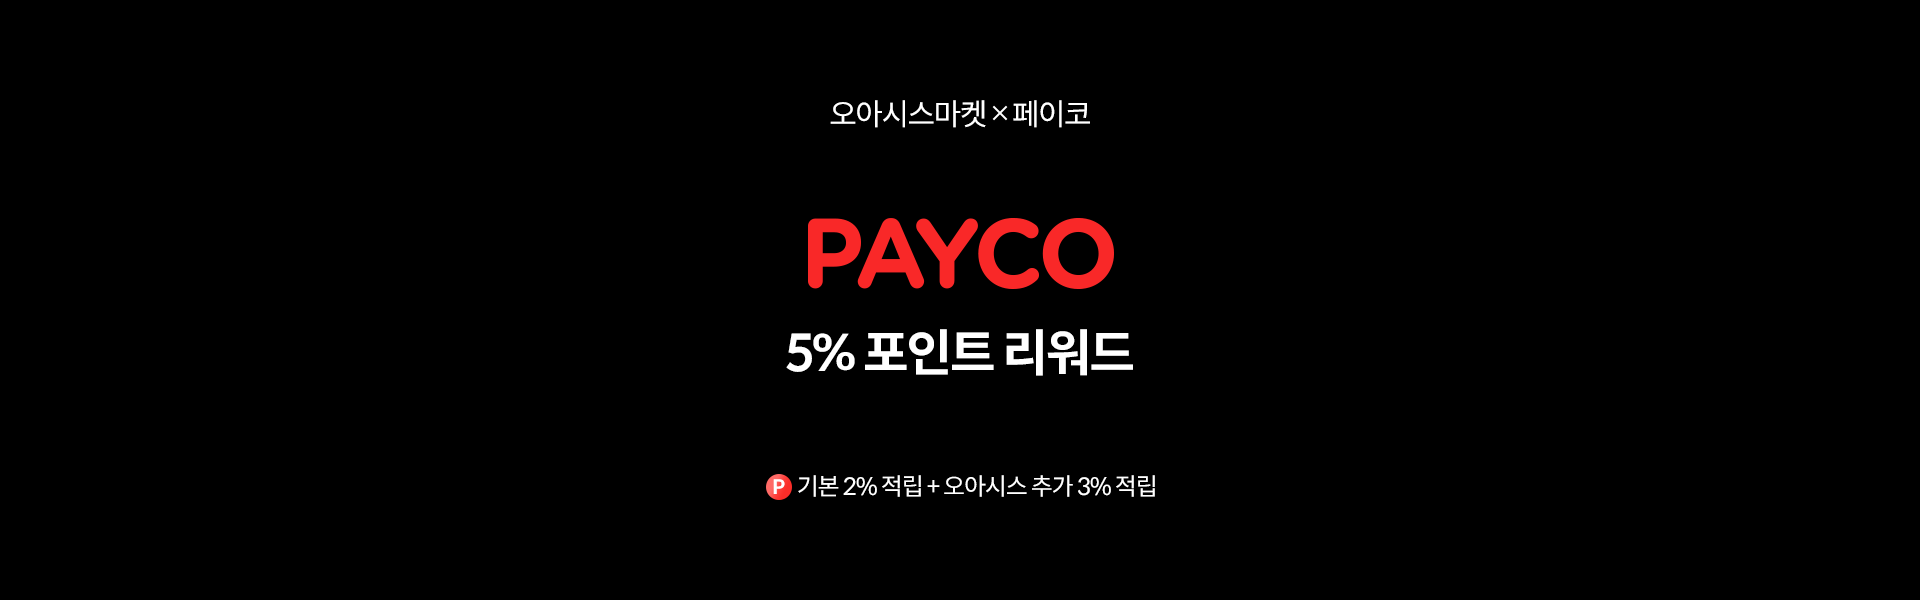 PAYCO 포인트 리워드 5% 적립 이벤트 (기본 2% 적립 + 오아시스 3% 추가 적립)